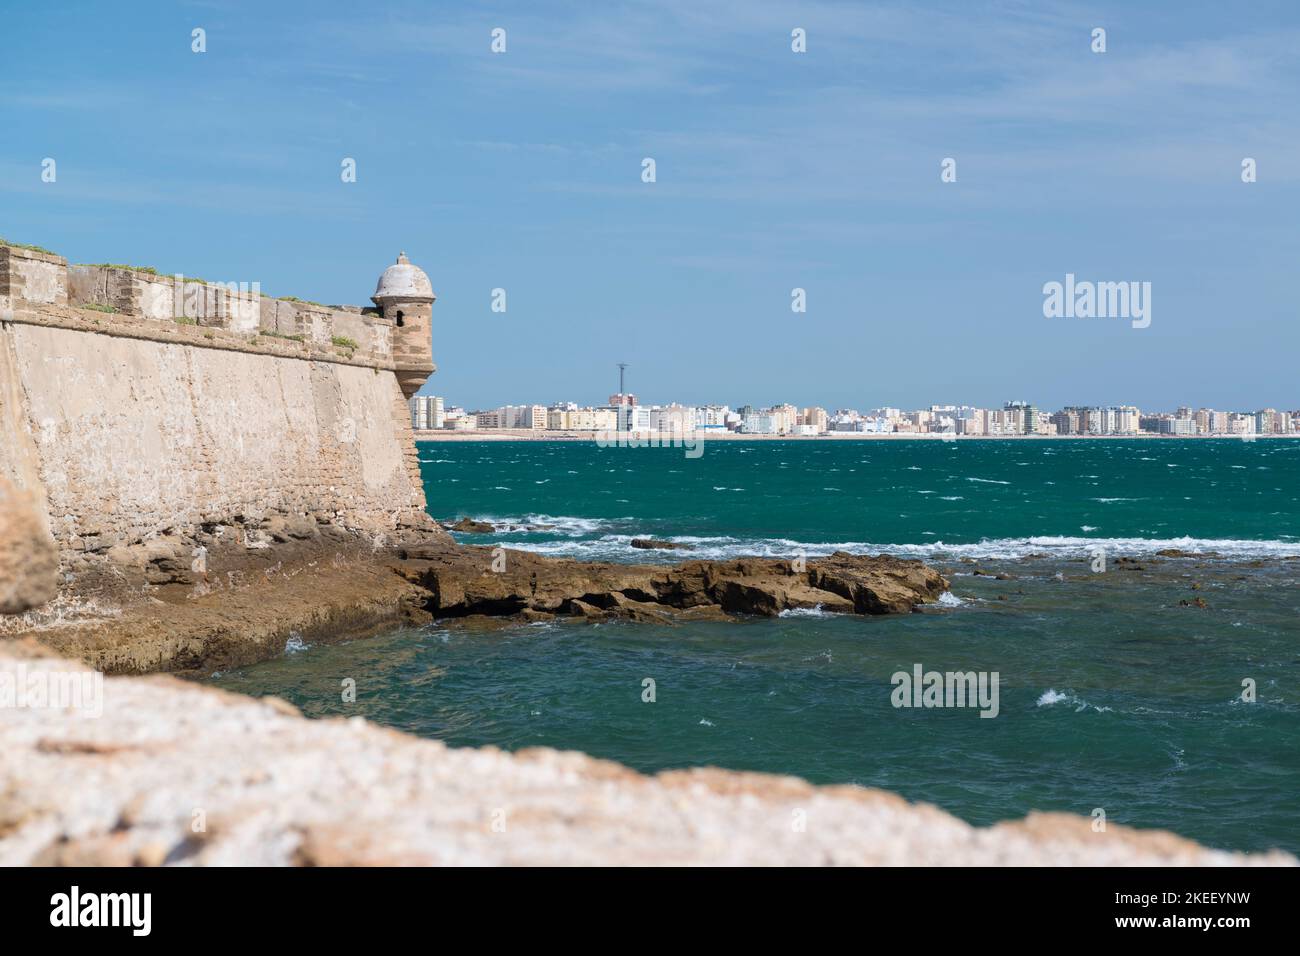 Le mura di Castillo de San Sebastián, Cádiz, Spagna, situato su una piccola isola separata dalla città principale, visibile sullo sfondo. Foto Stock